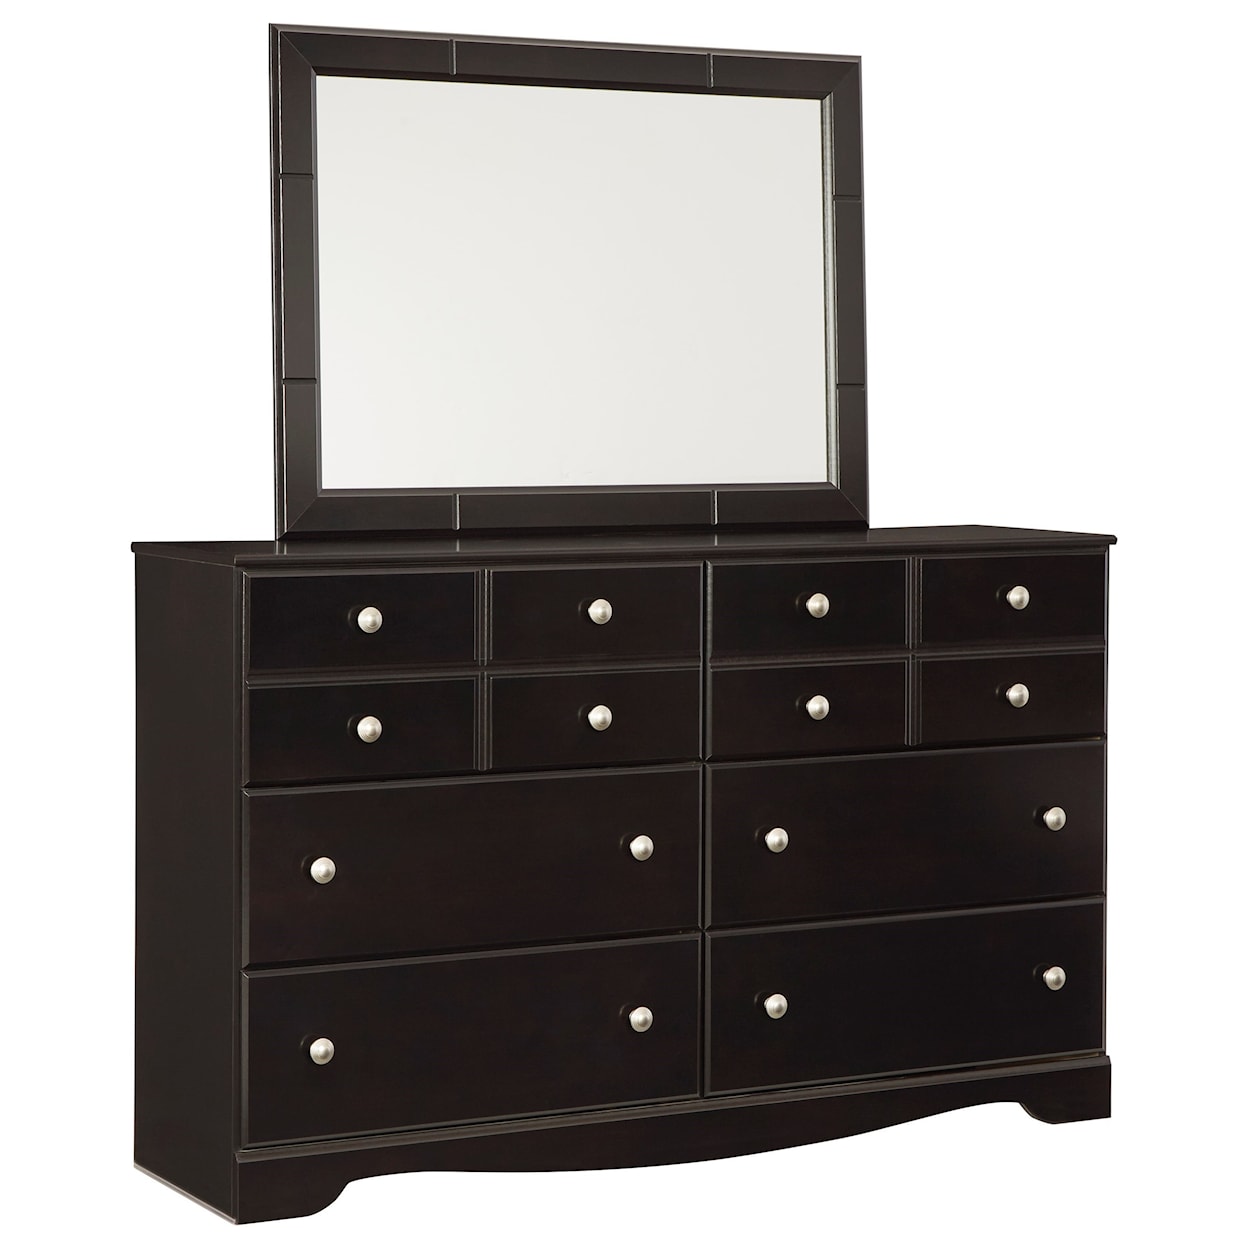 Ashley Furniture Signature Design Mirlotown Dresser & Mirror